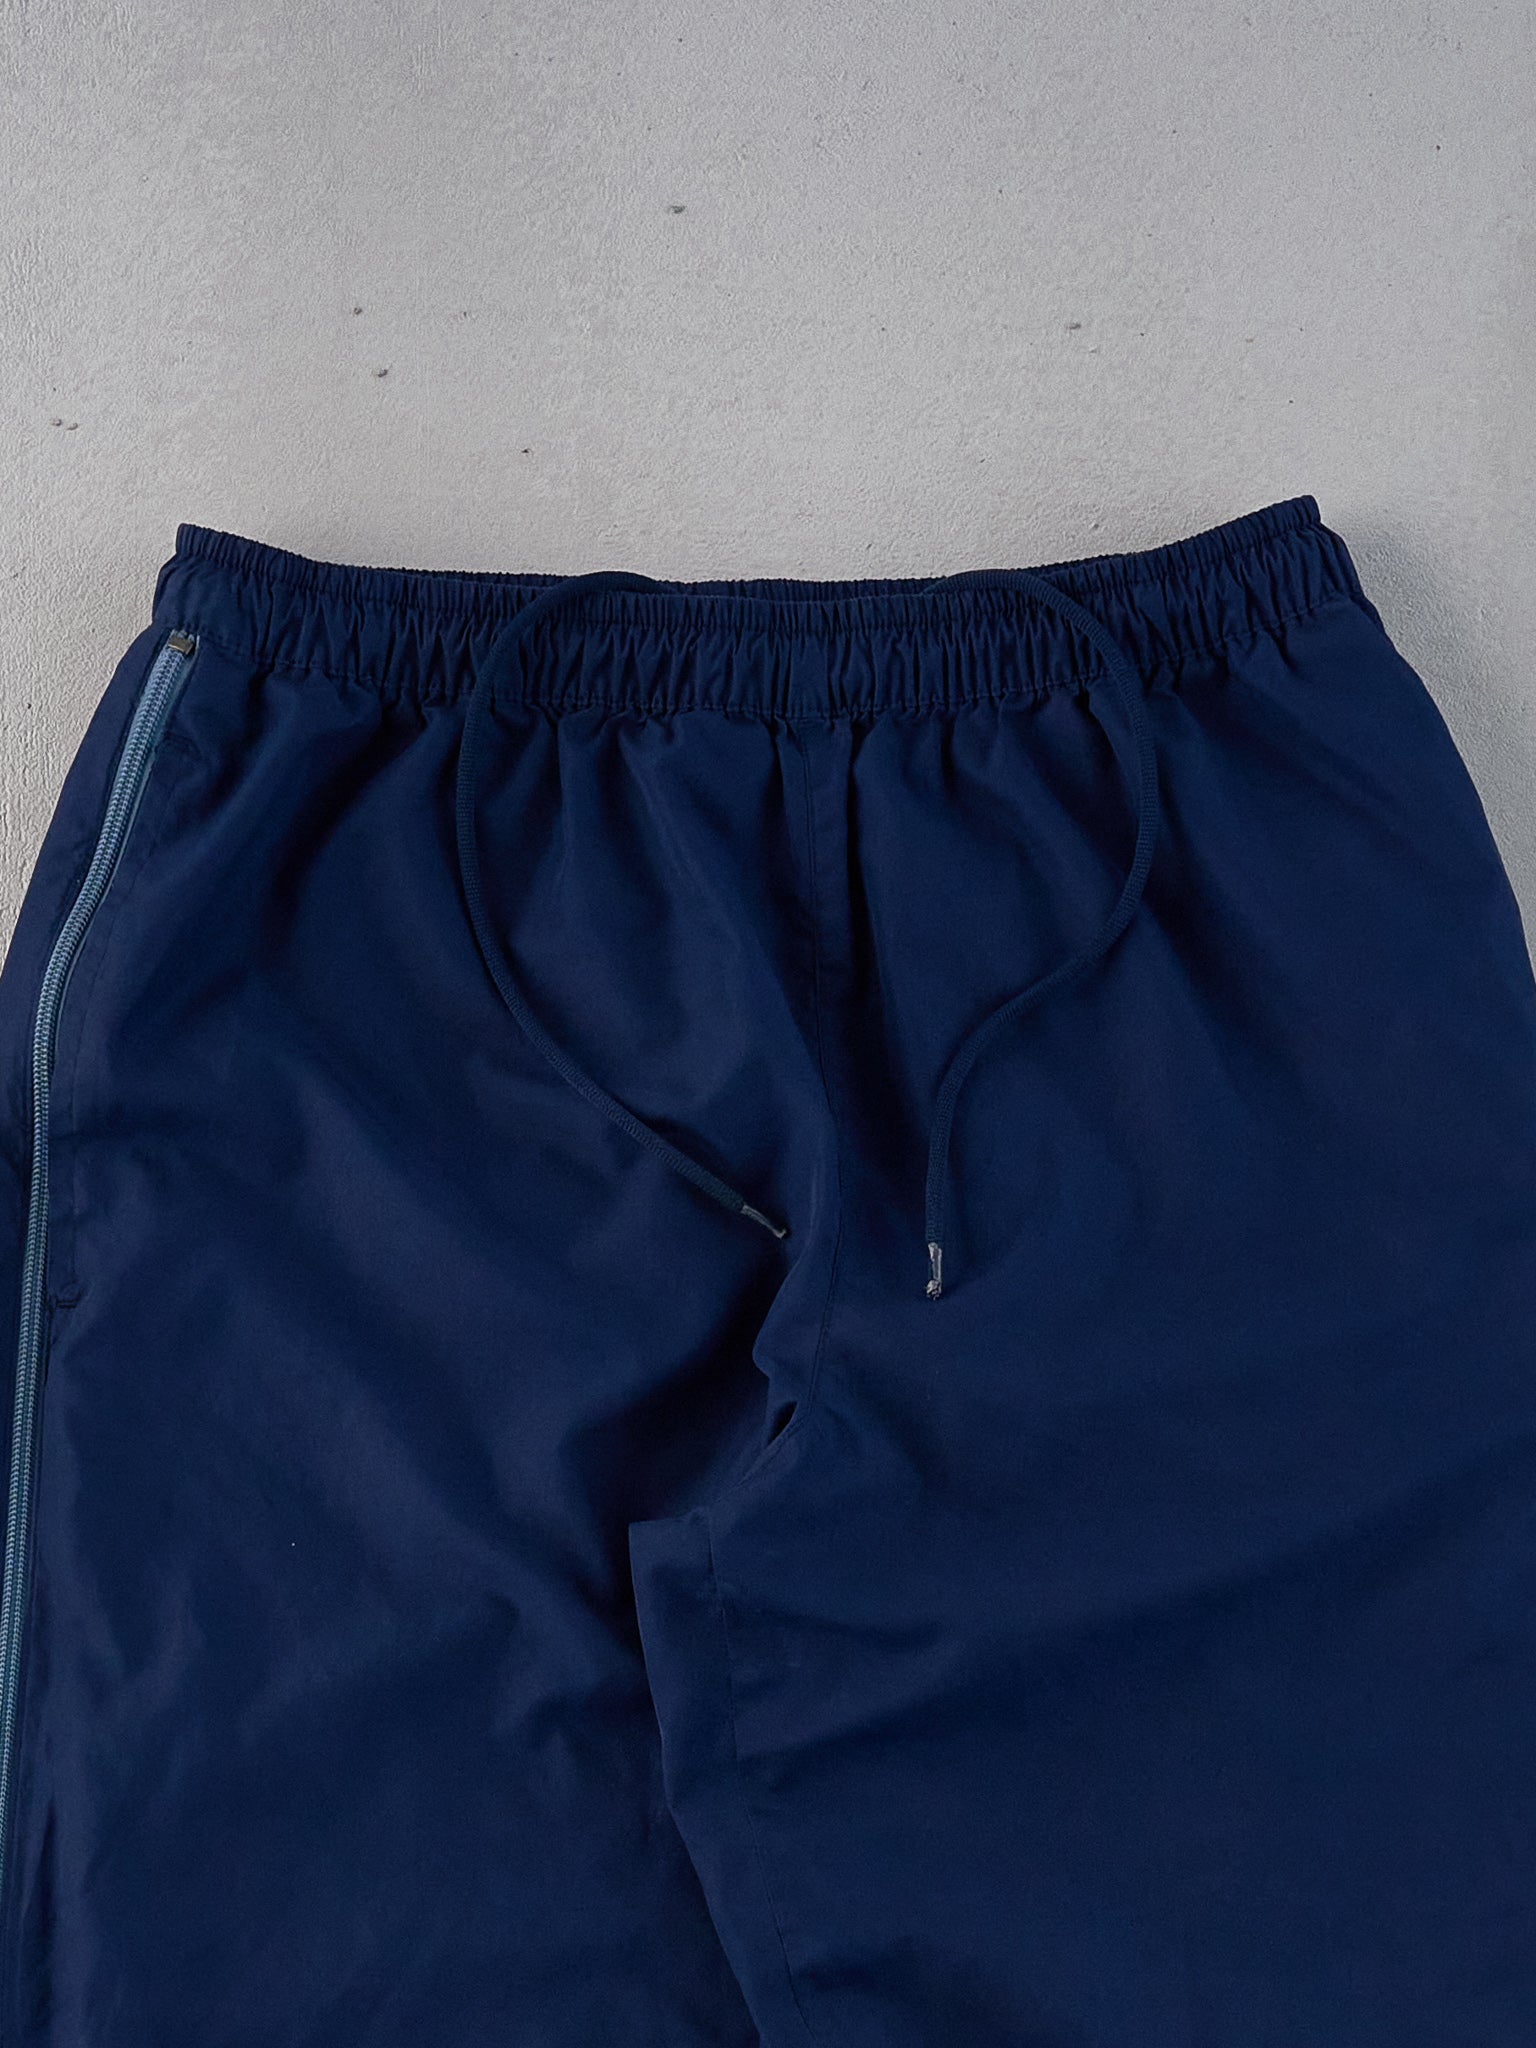 Vintage Y2k Navy Blue Nike Zip up Track Pants (30x33)